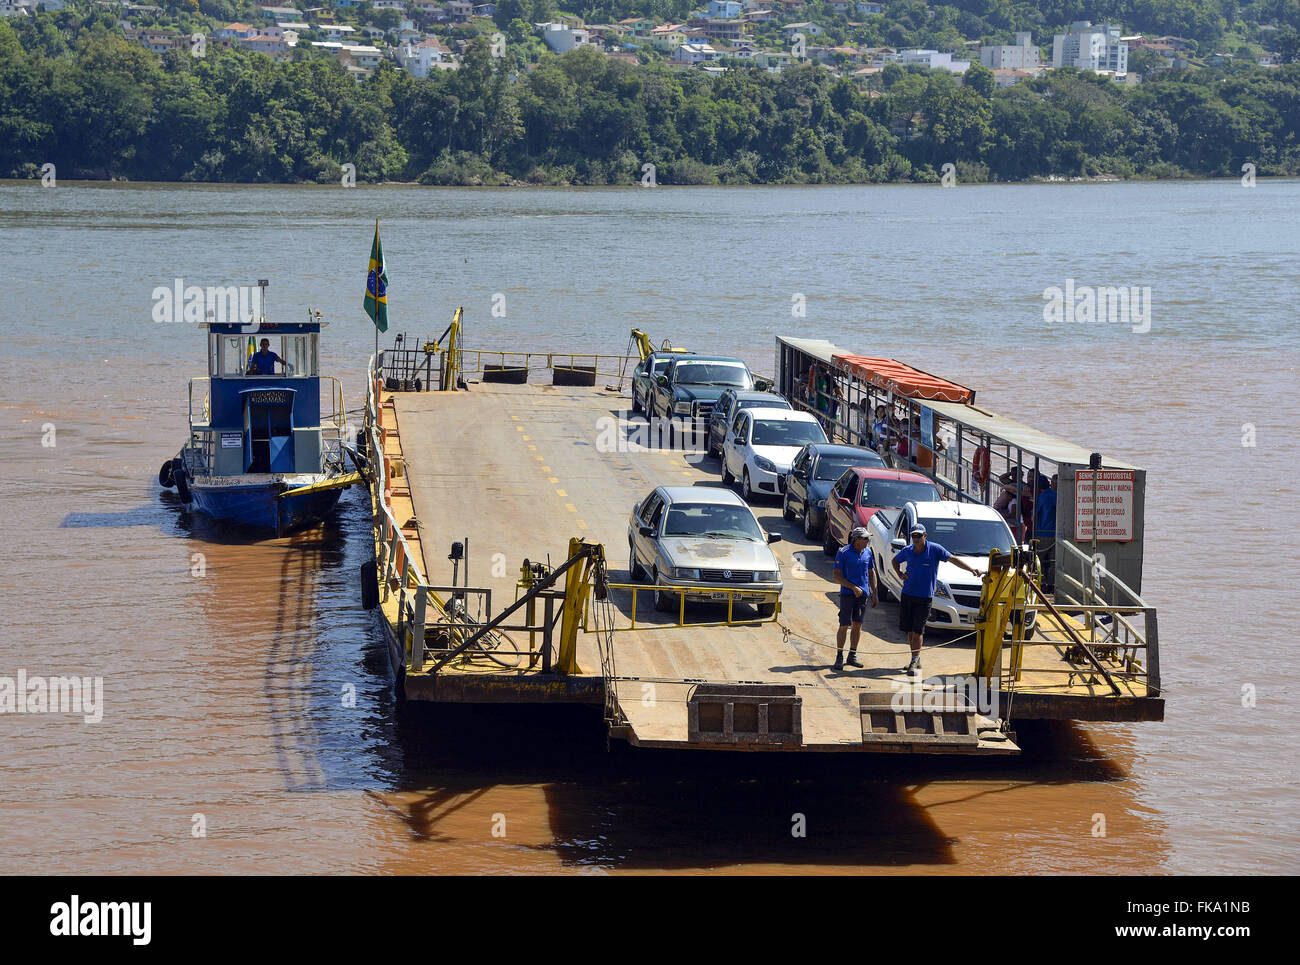 Balsa de travessia de passageiros e veículos no Rio Uruguai Stock Photo